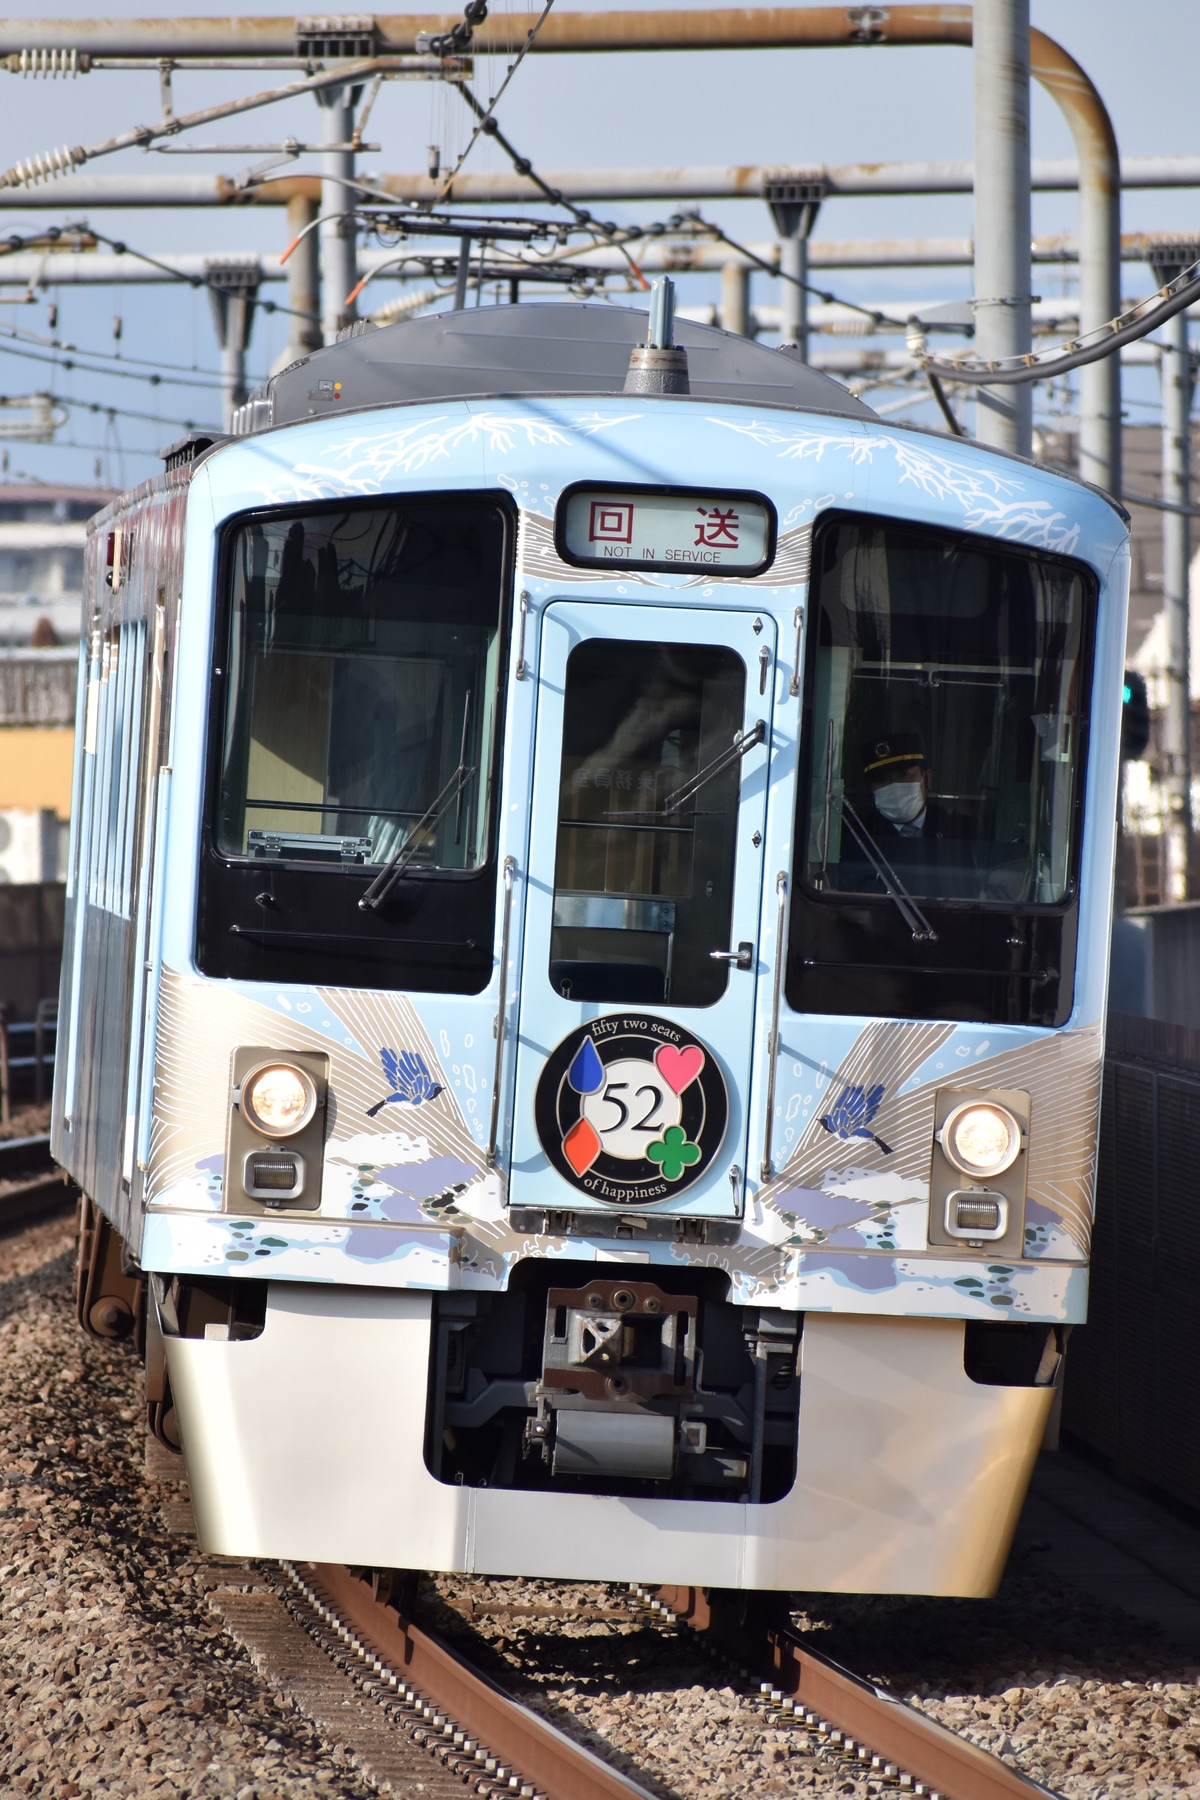 西武鉄道 武蔵丘車両基地 4000系 4009F